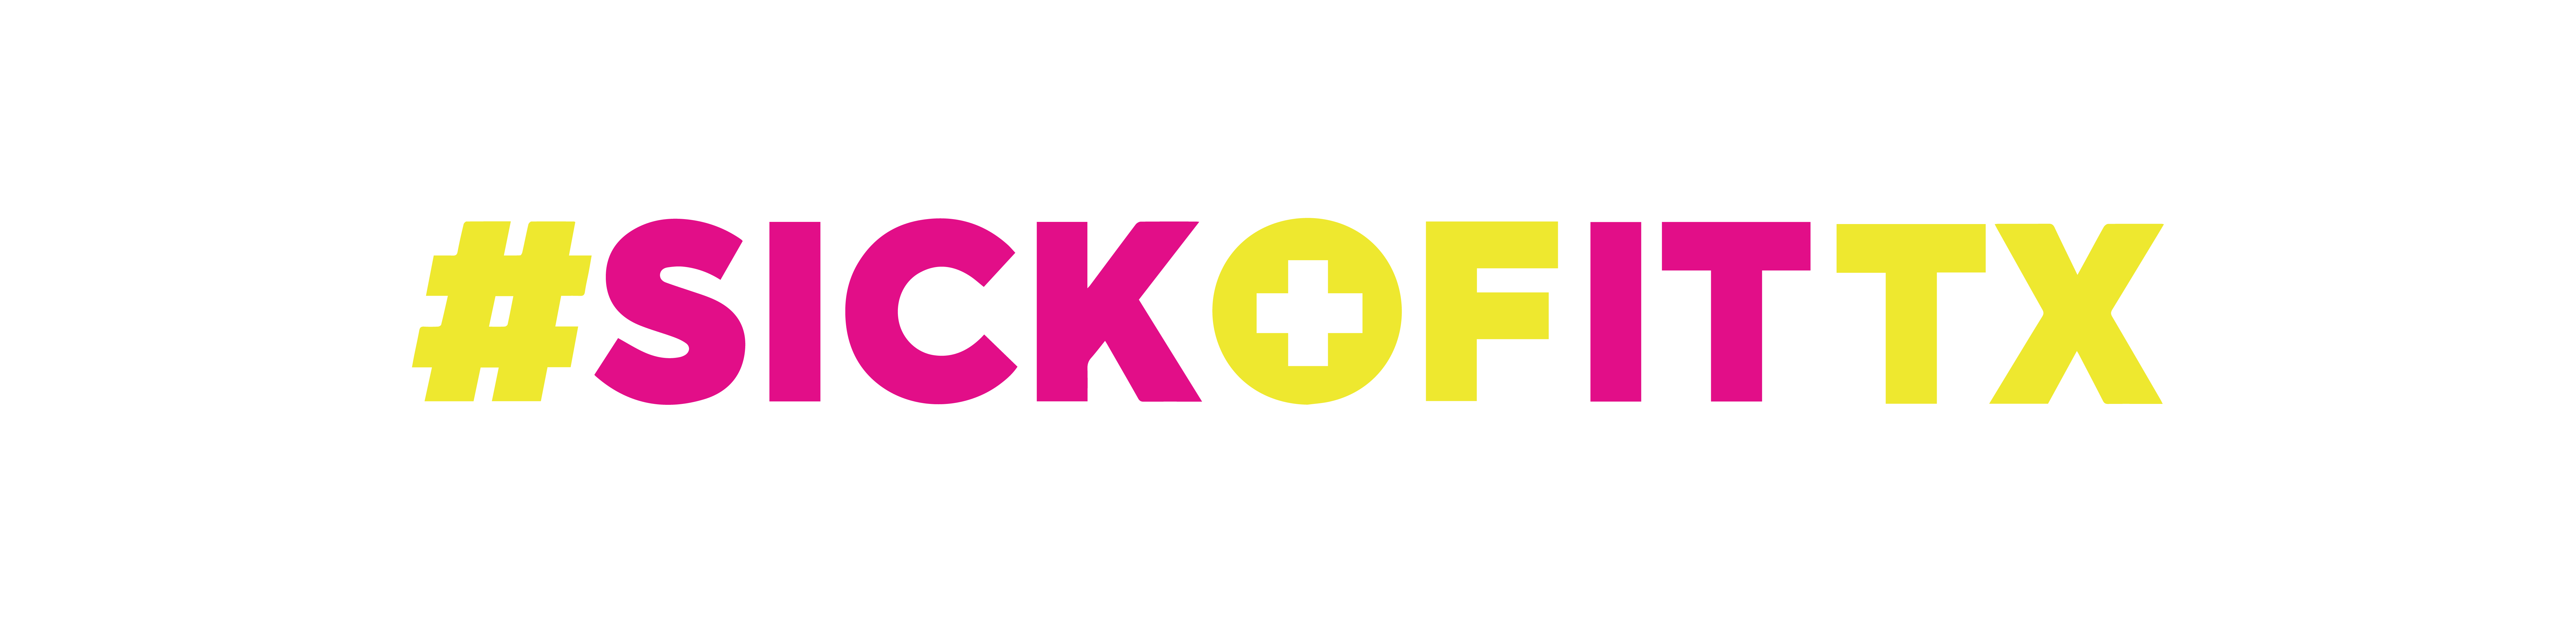 #SickOfItTX logo for site identity